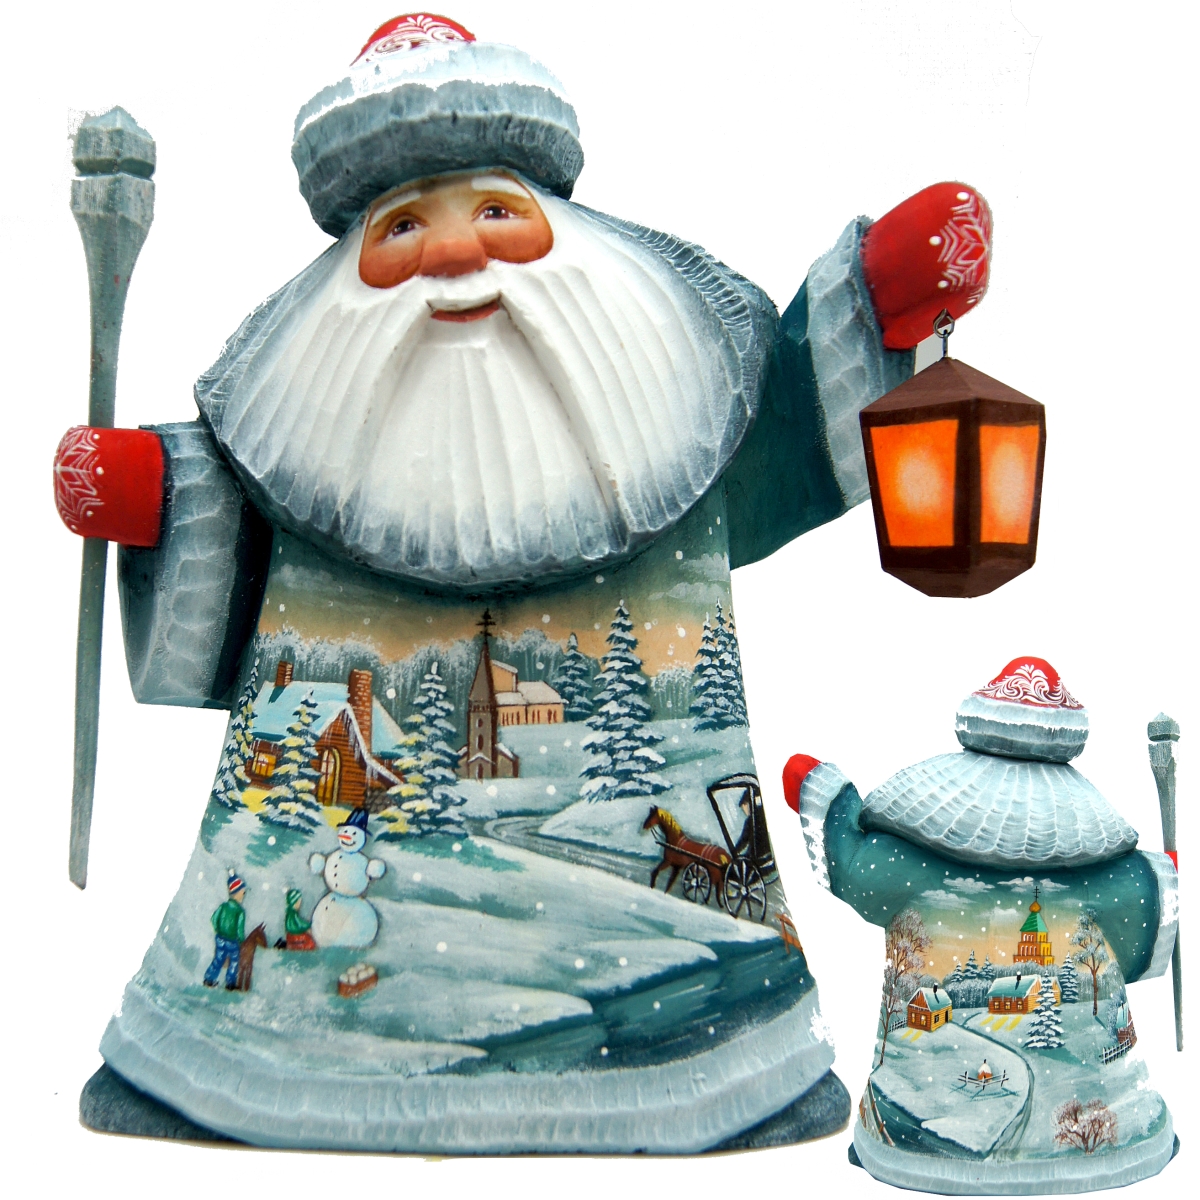 821480 Nordic Village Santa, Wood Carved & Hand Painted Masterpiece Santa Figurine